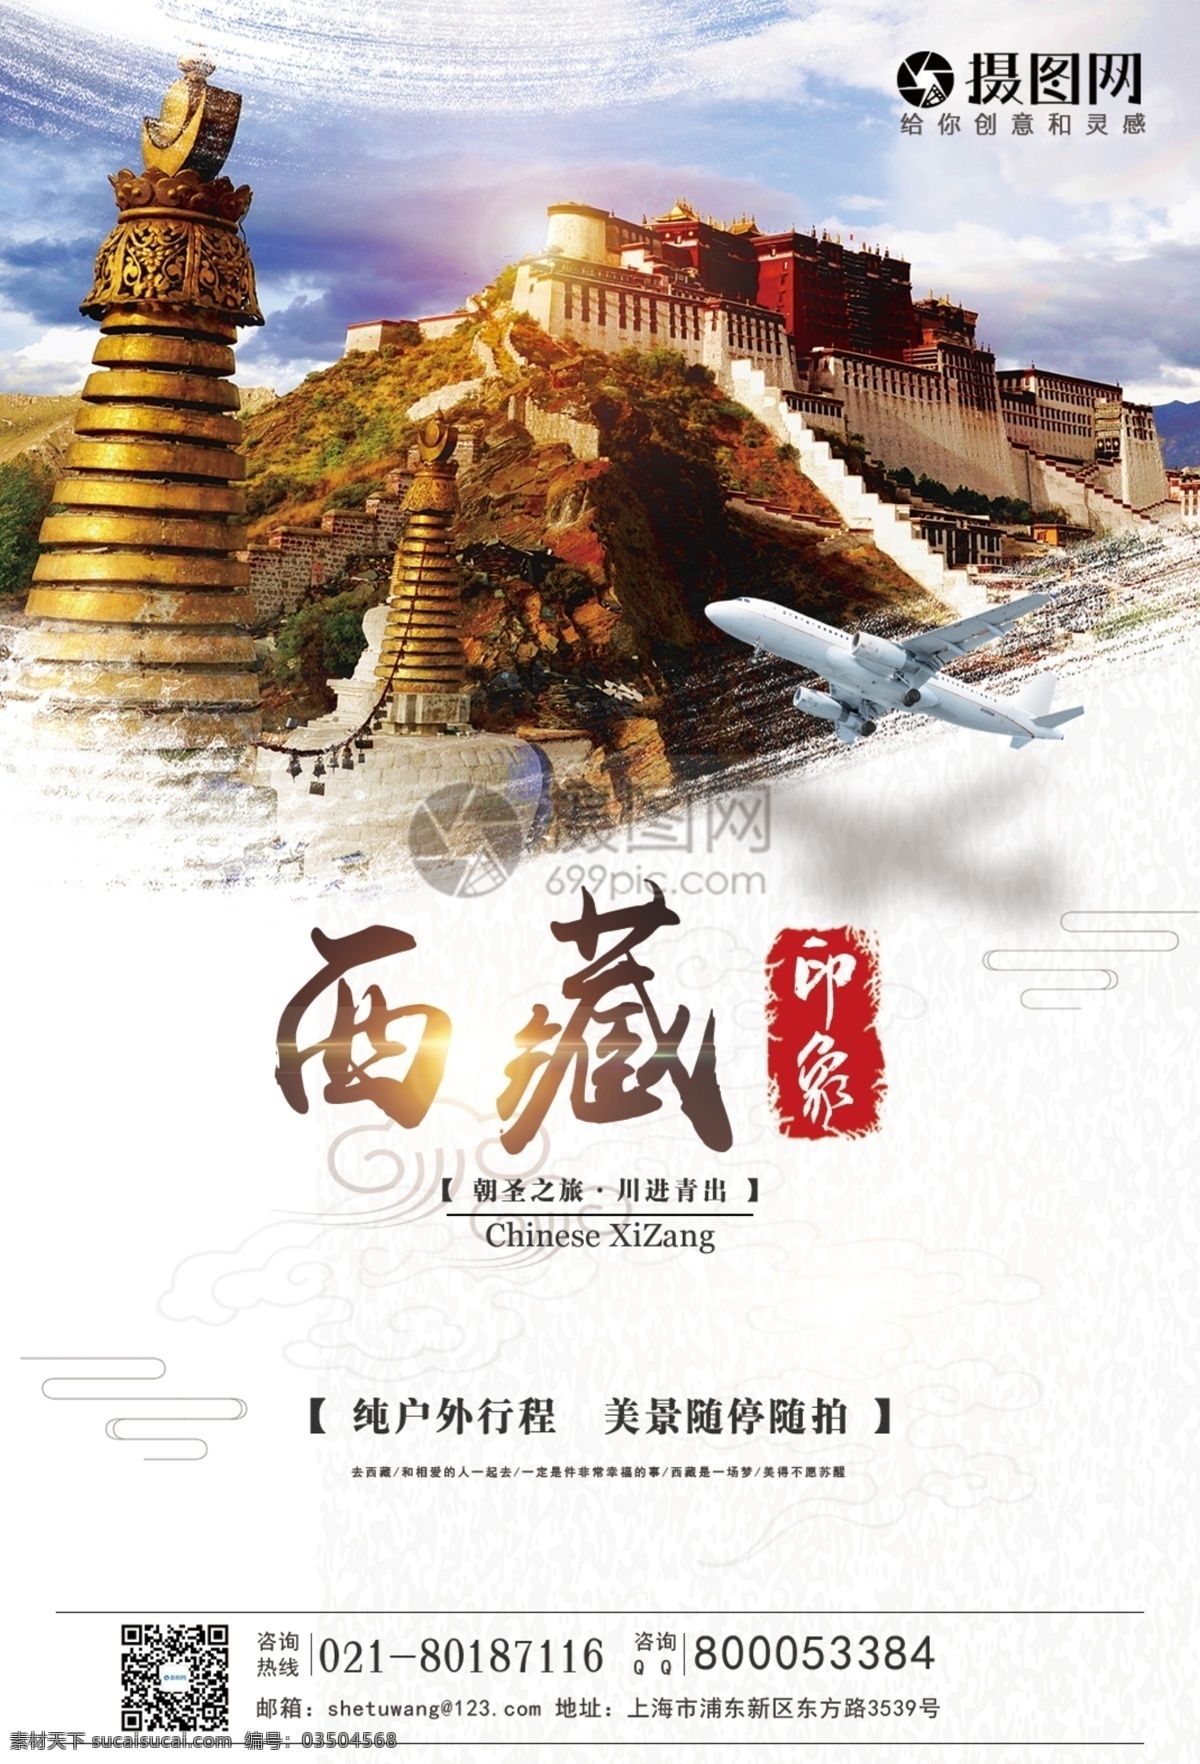 西藏 印象 旅游 海报 美景 团队 西藏旅游 旅游海报 旅行 西藏印象